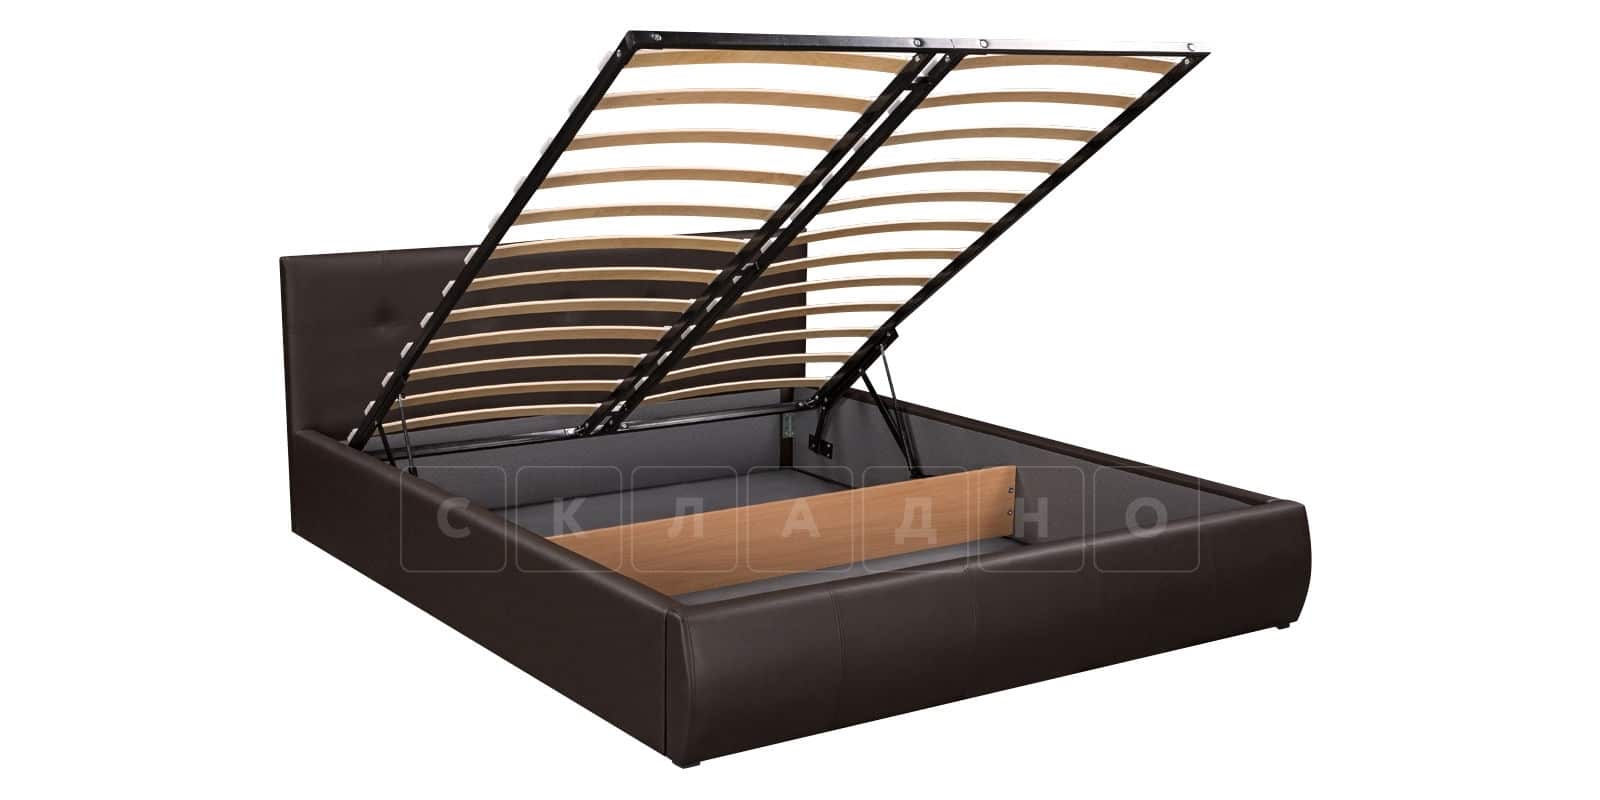 Мягкая кровать Афина 160 см экокожа коричневого цвета фото 6 | интернет-магазин Складно